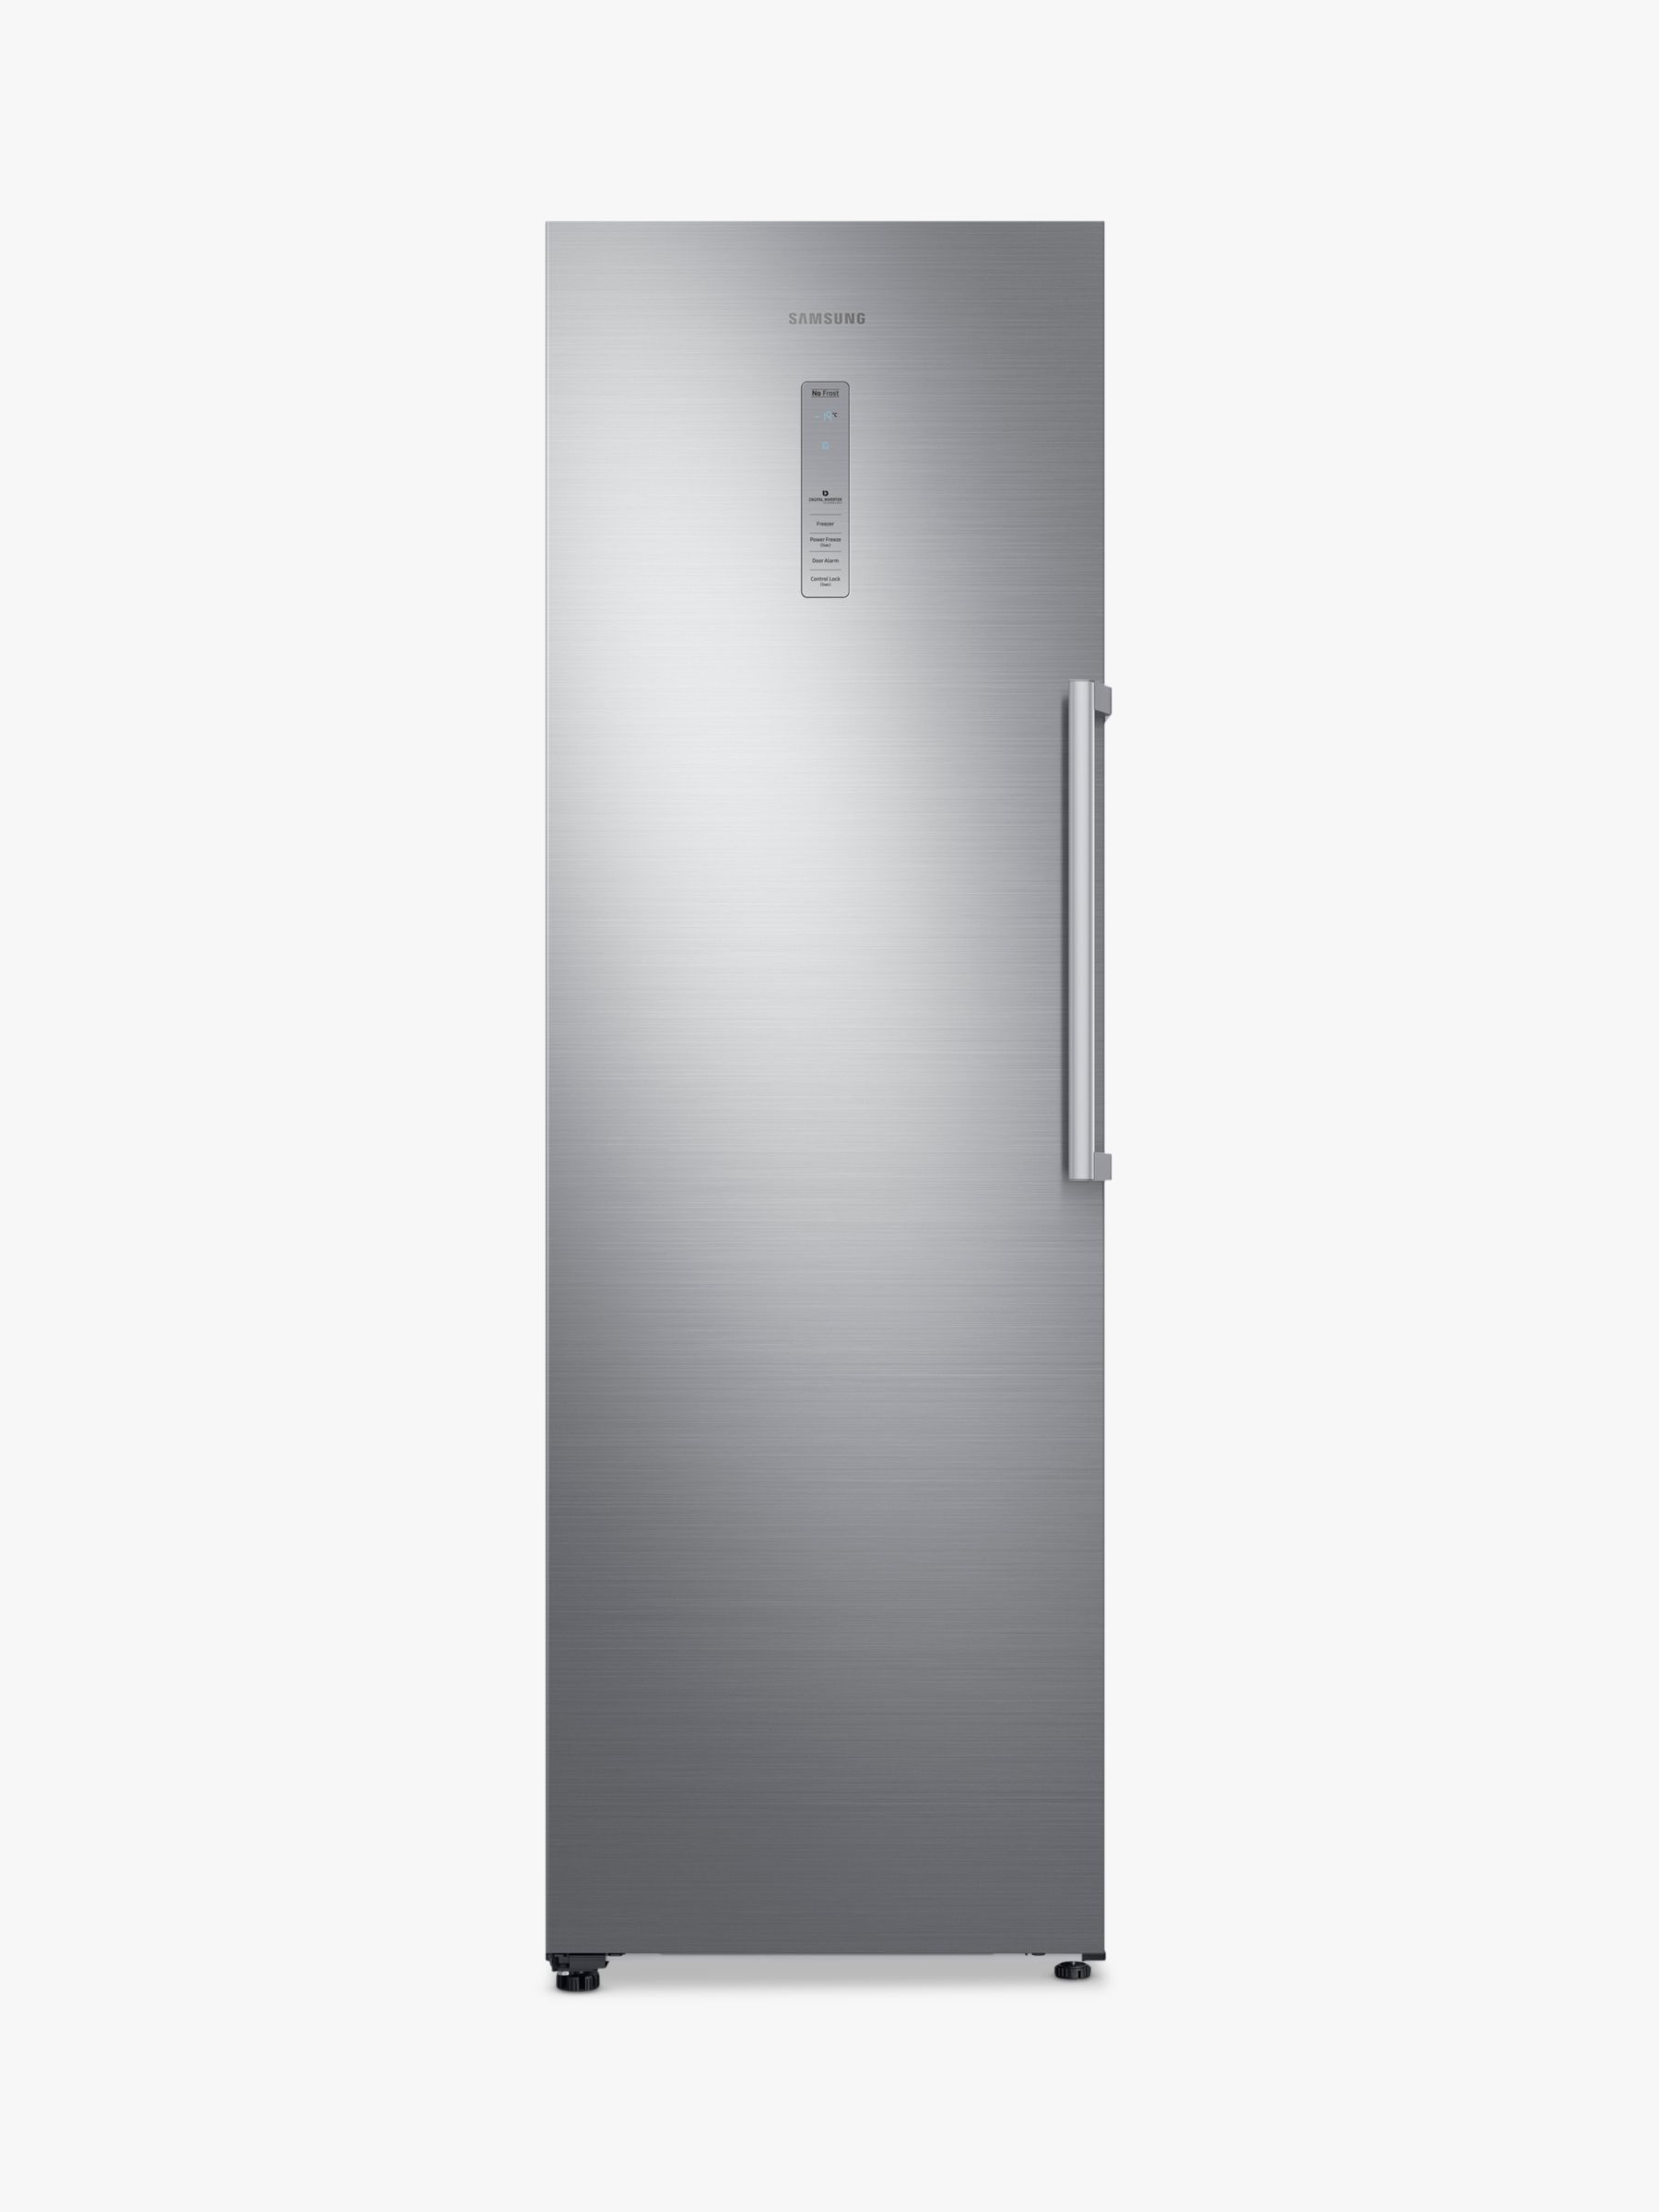 Samsung RZ32M71207F/EU Freestanding Freezer, A+ Energy Rating, 60cm Wide, Silver